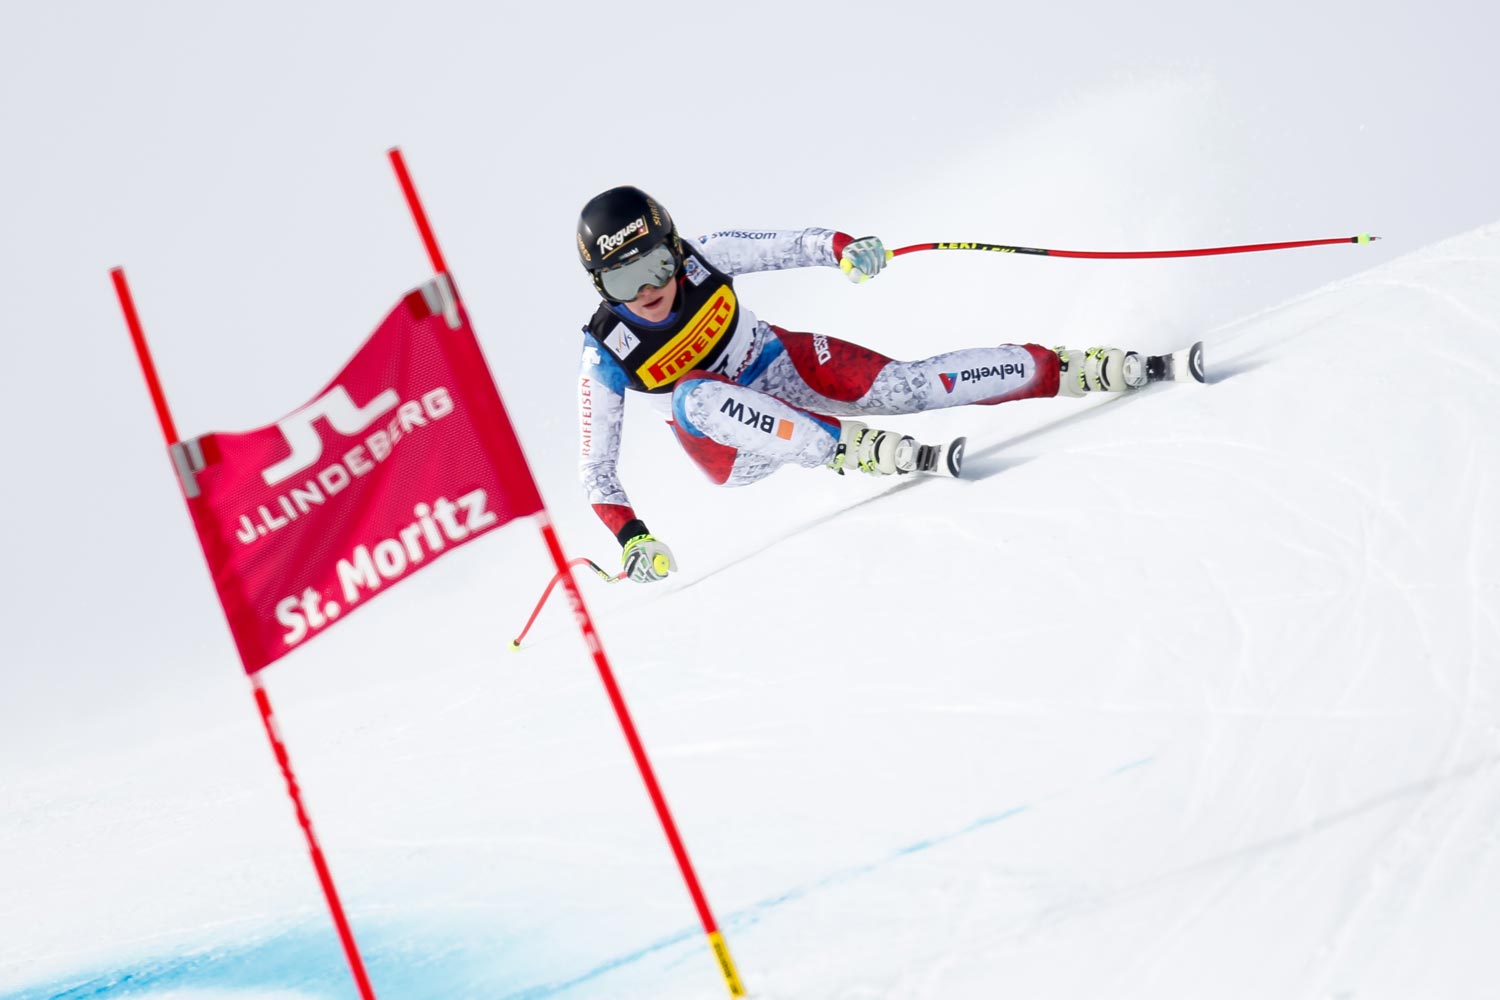 Alpine Ski World Championships 2017 St. Moritz, Super G Women, Lara Gut